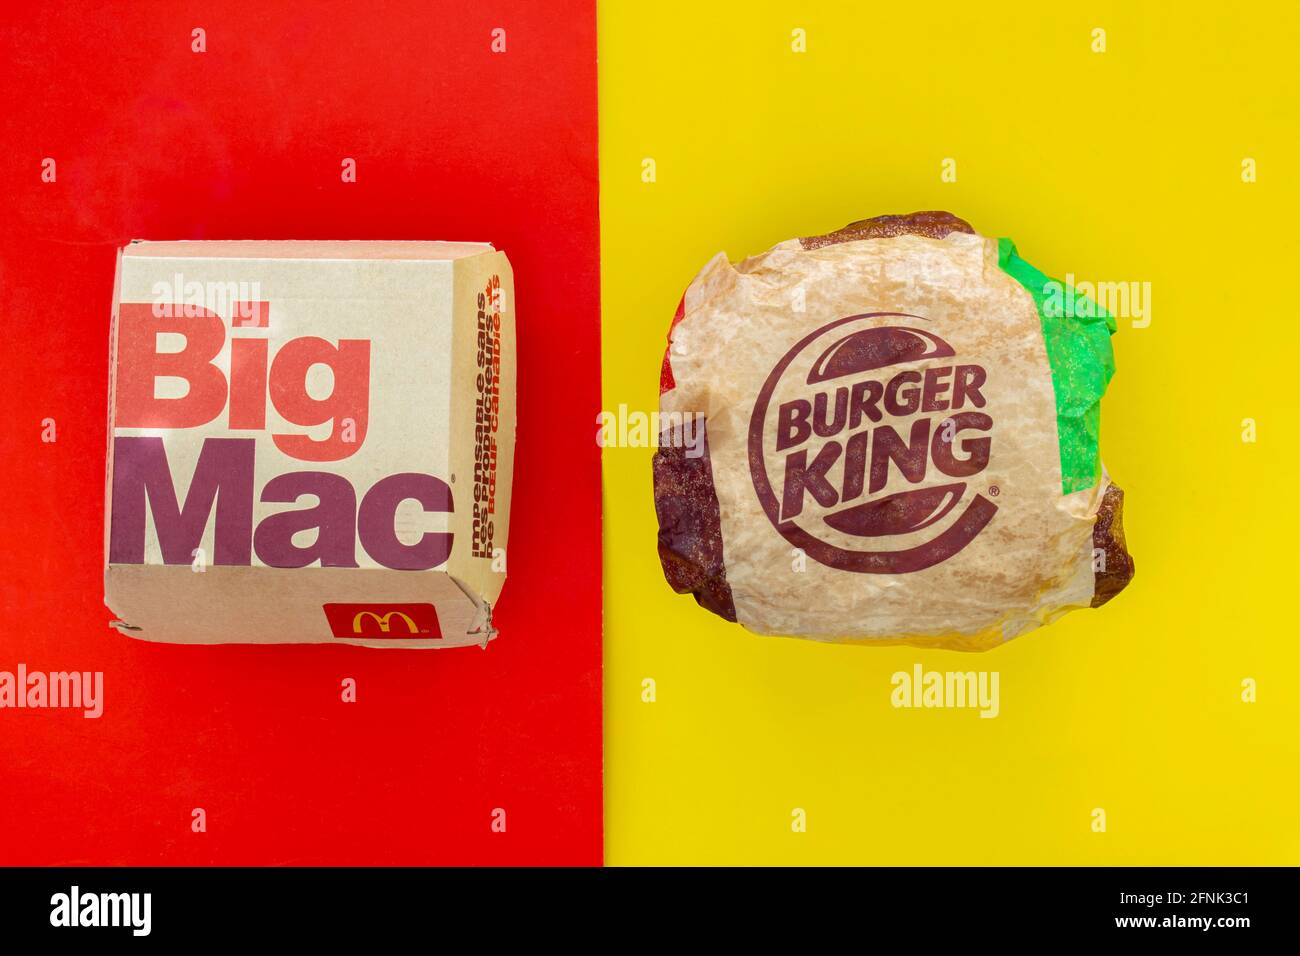 Calgary, Alberta. Canada. May 17, 2021. A Mcdonald's Big Mac and Burger King Whopper hamburgers. Concept: Top Hamburger Companies Stock Photo